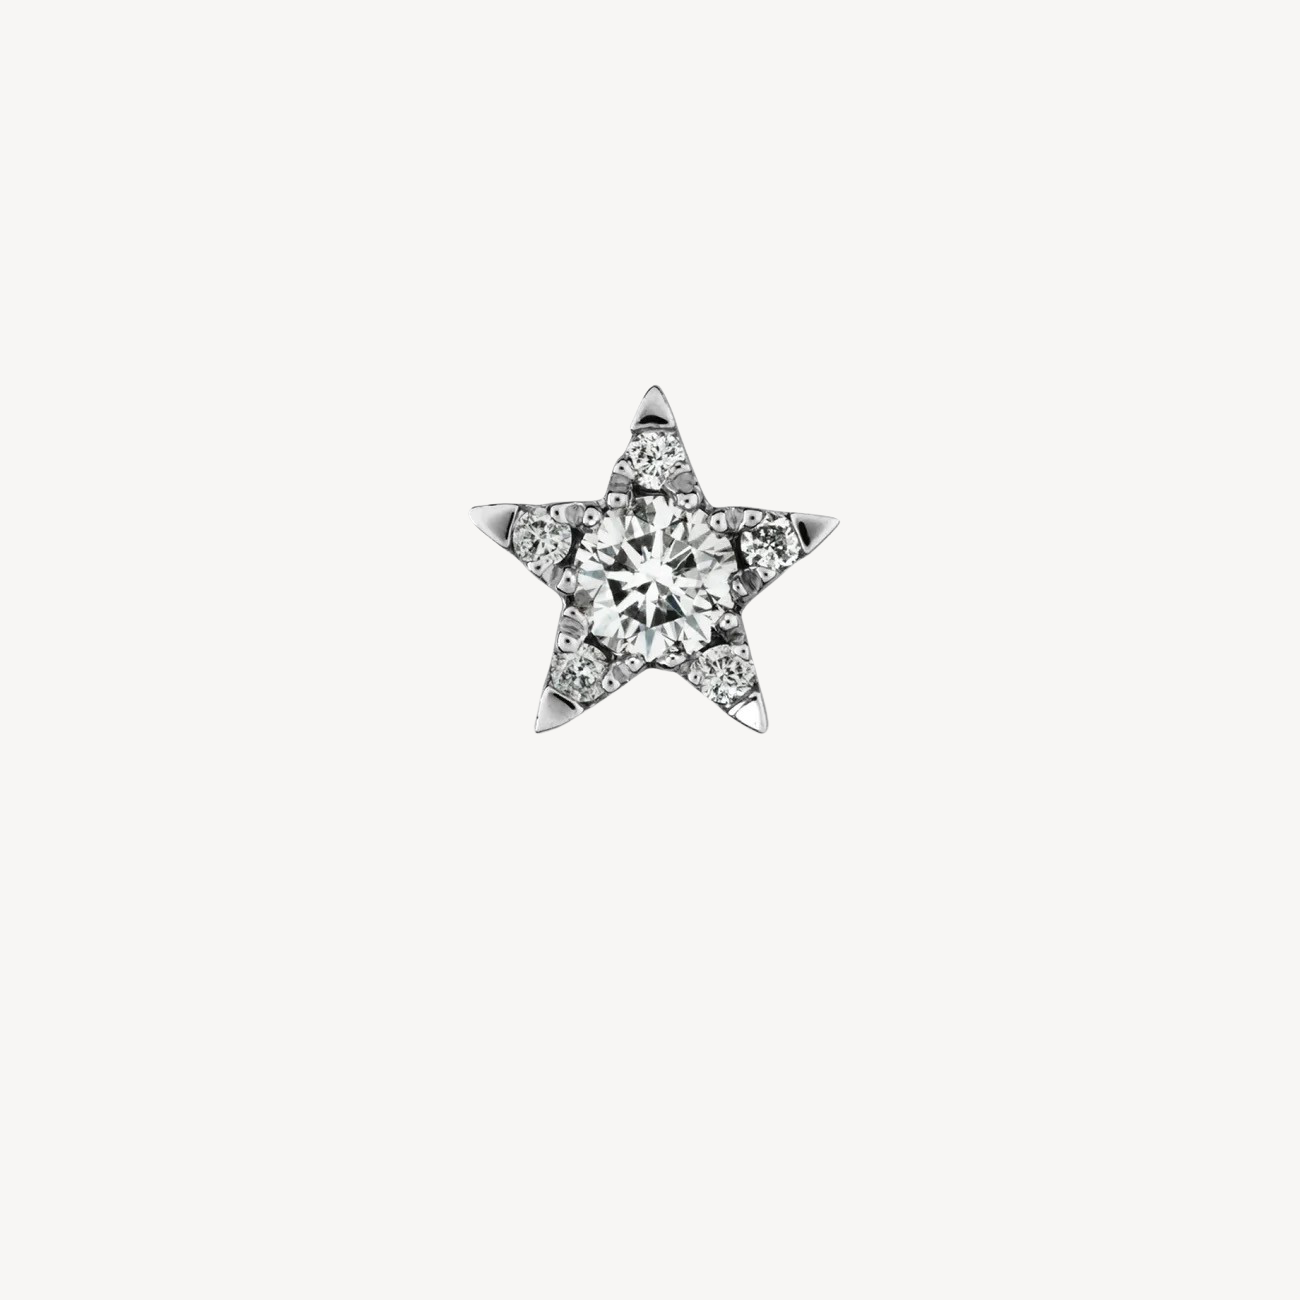 Boucle d'oreille Stud Diamond Star Threaded Or Blanc